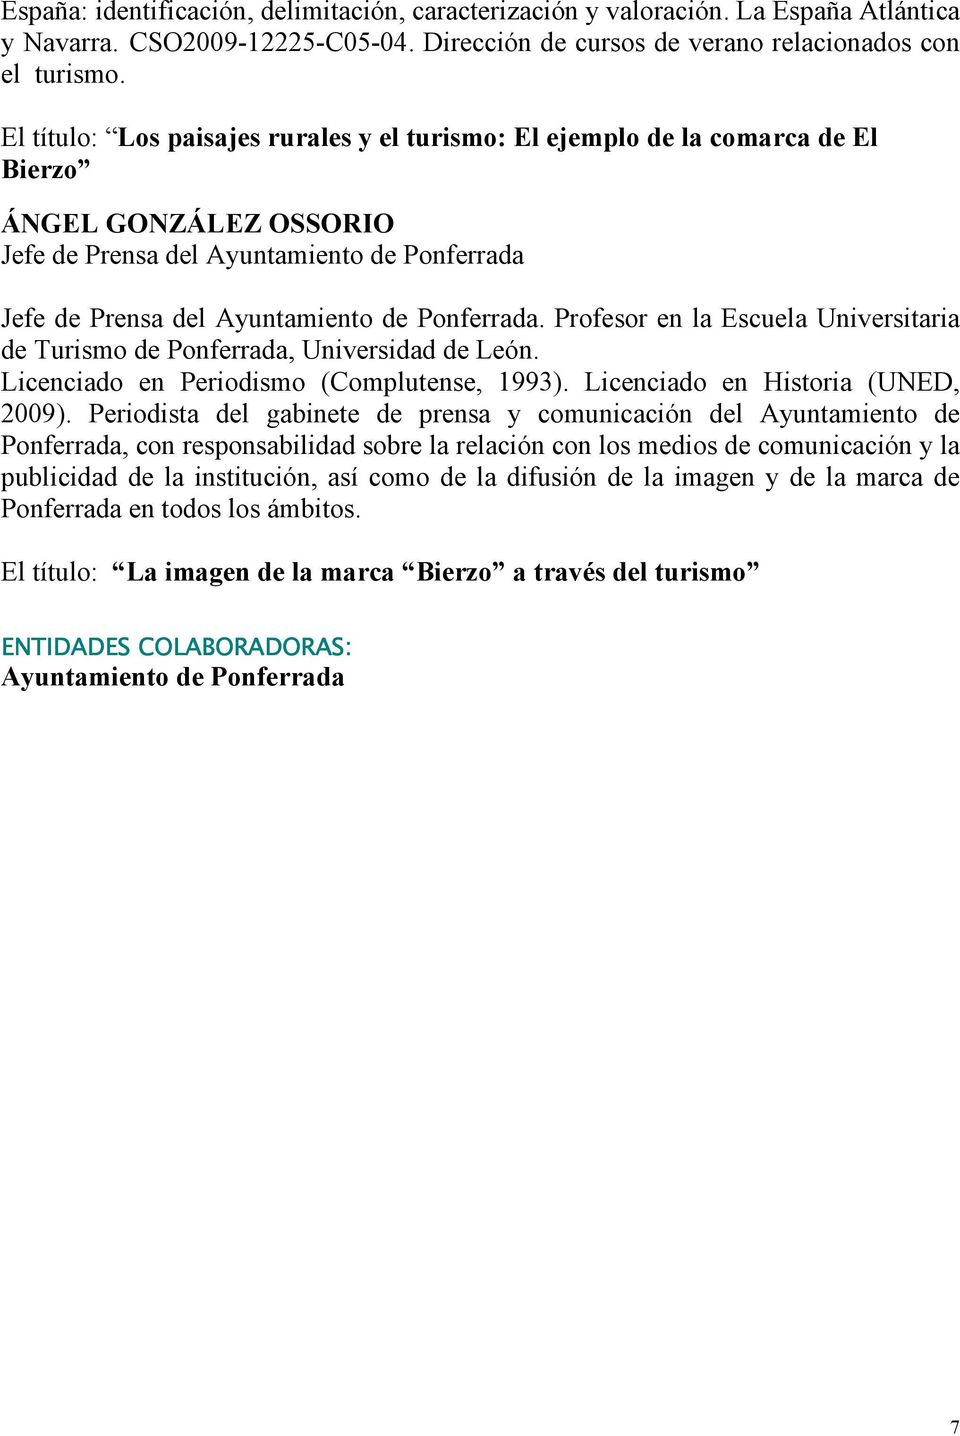 Profesor en la Escuela Universitaria de Turismo de Ponferrada, Universidad de León. Licenciado en Periodismo (Complutense, 1993). Licenciado en Historia (UNED, 2009).